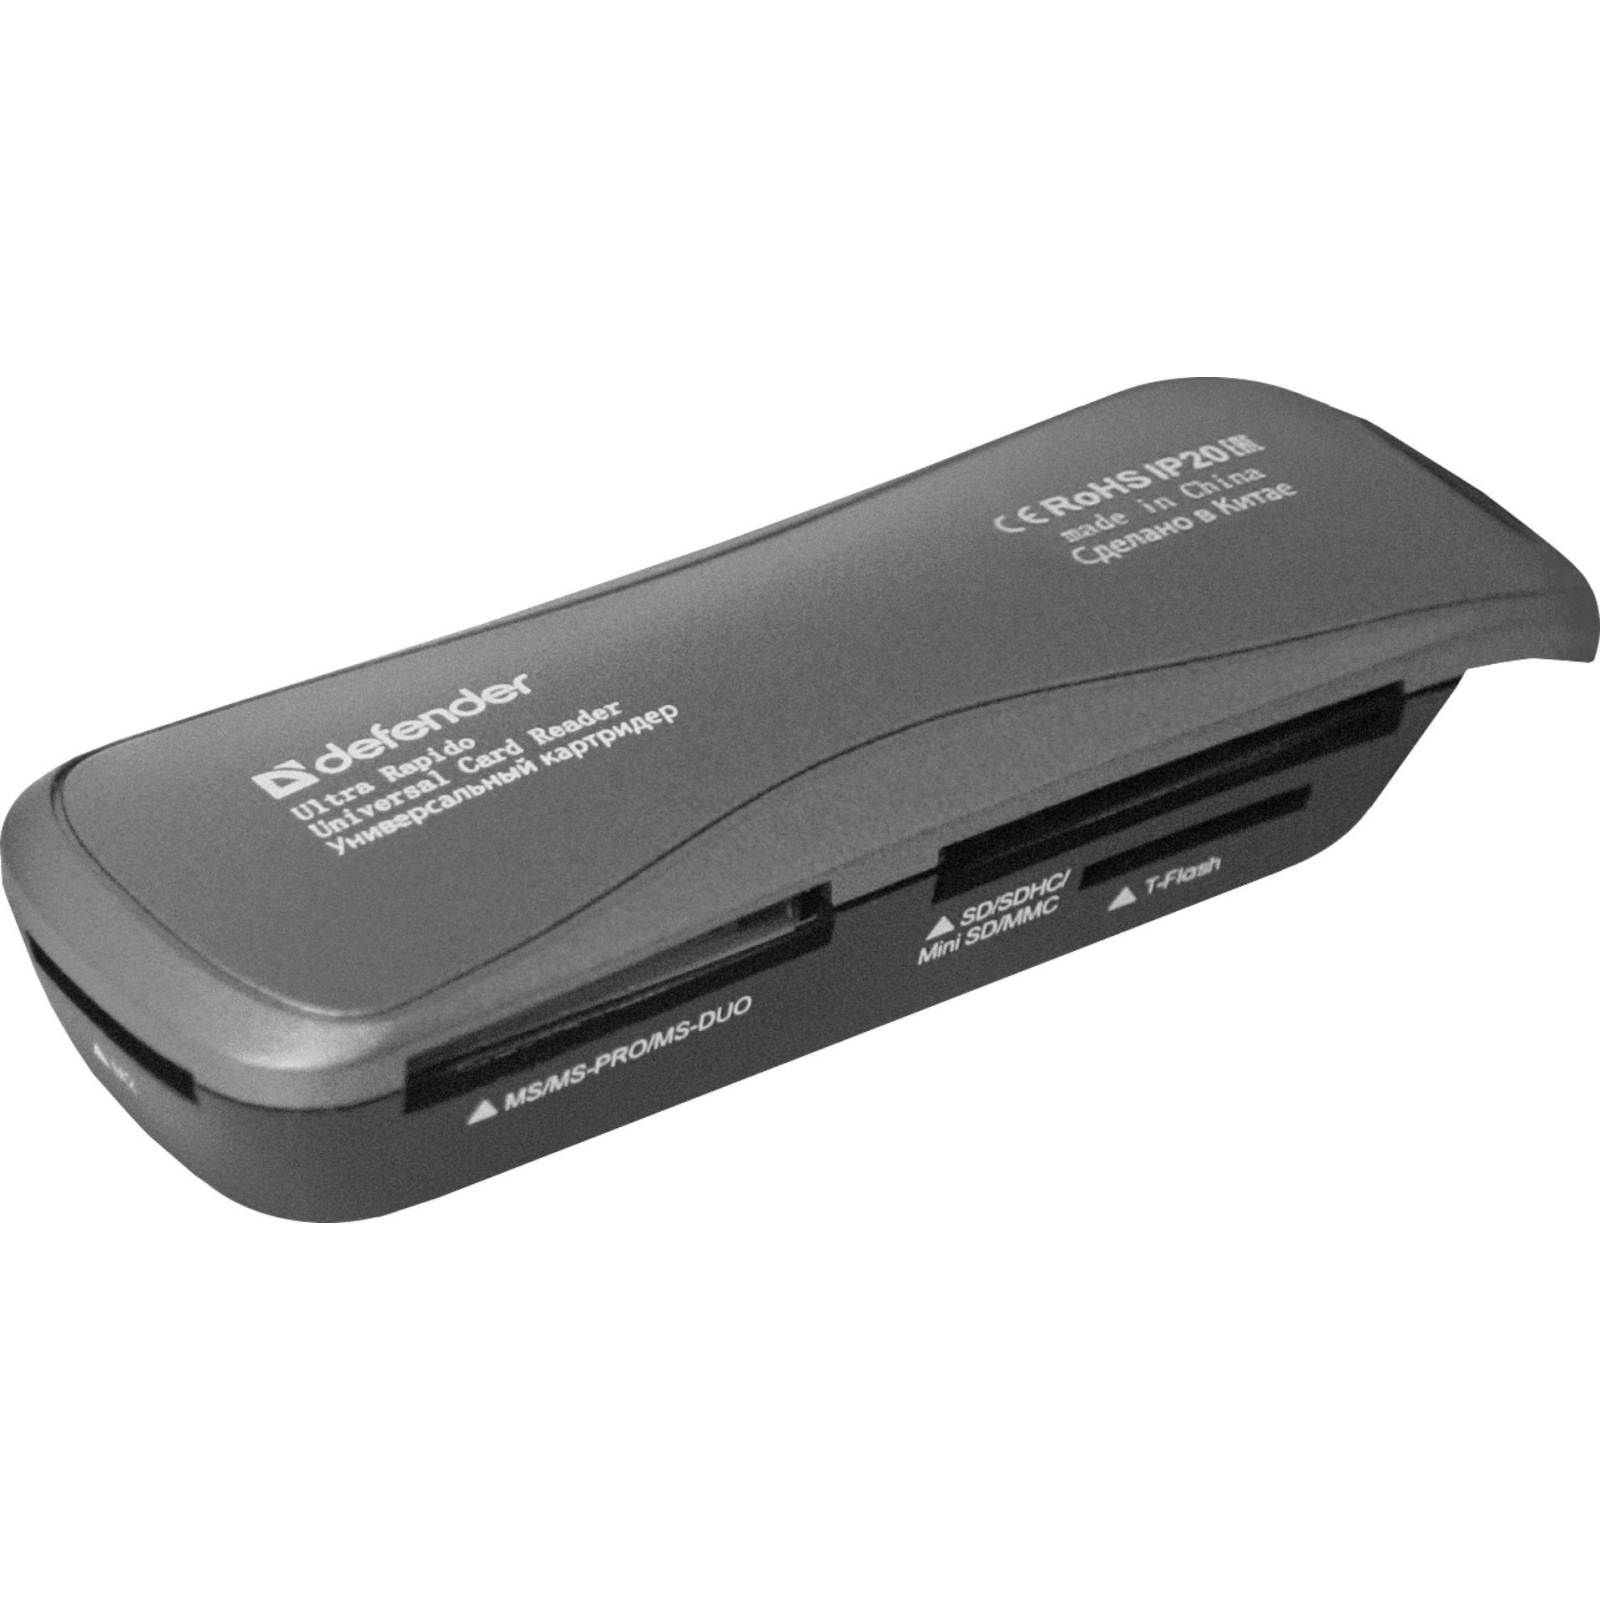 Считыватель флеш-карт Defender Ultra Rapido USB 2.0 black (83261)